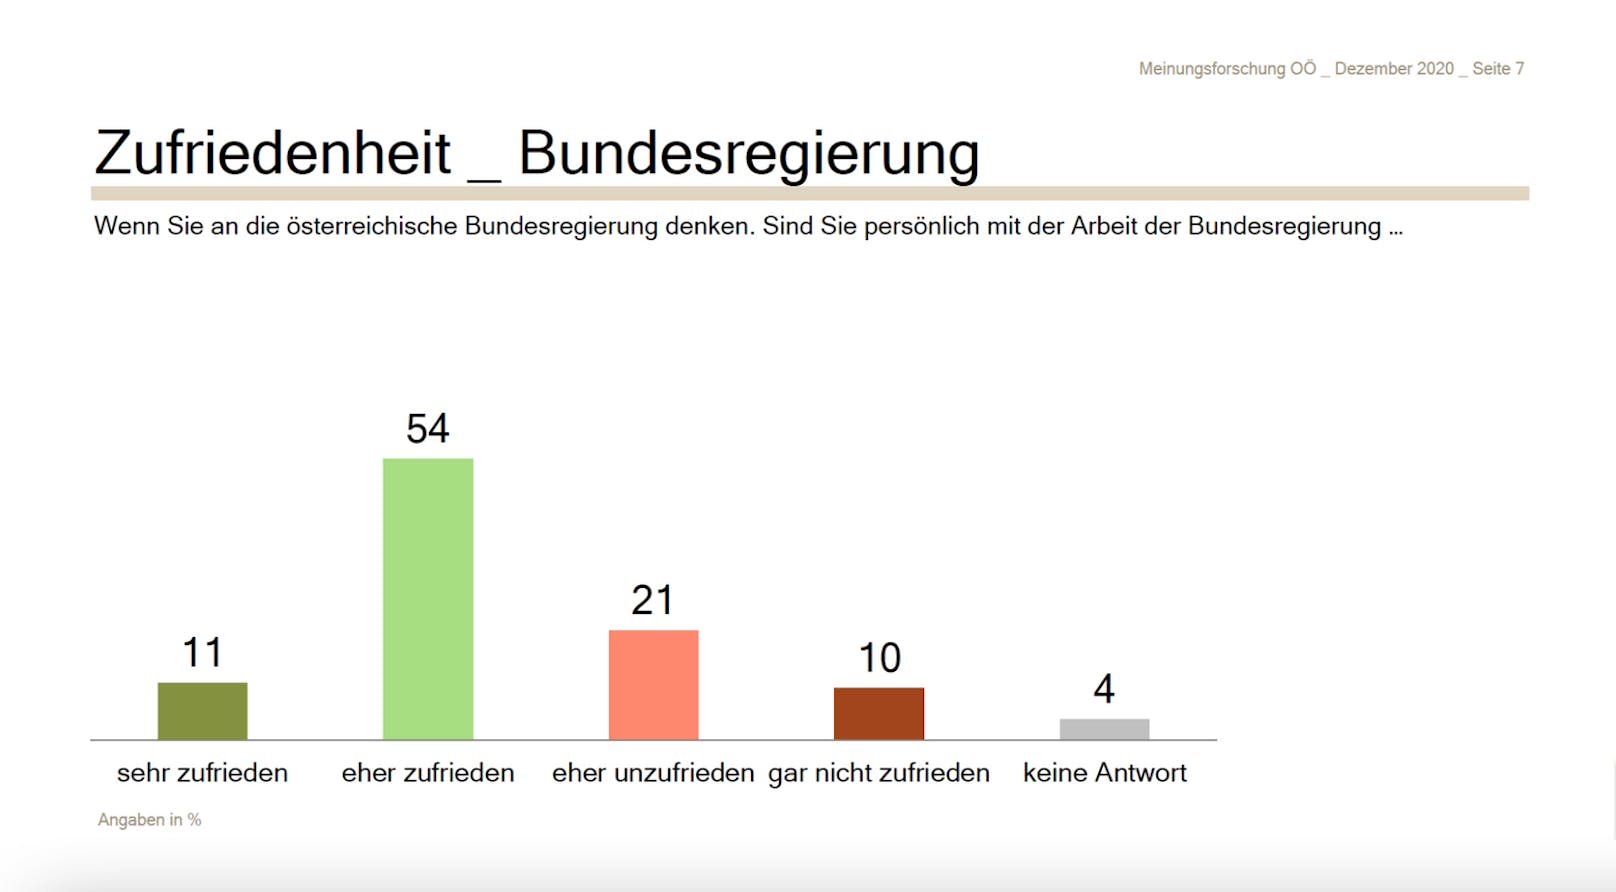 In Oberösterreich ist man mit der Bundesregierung überwiegend zufrieden.